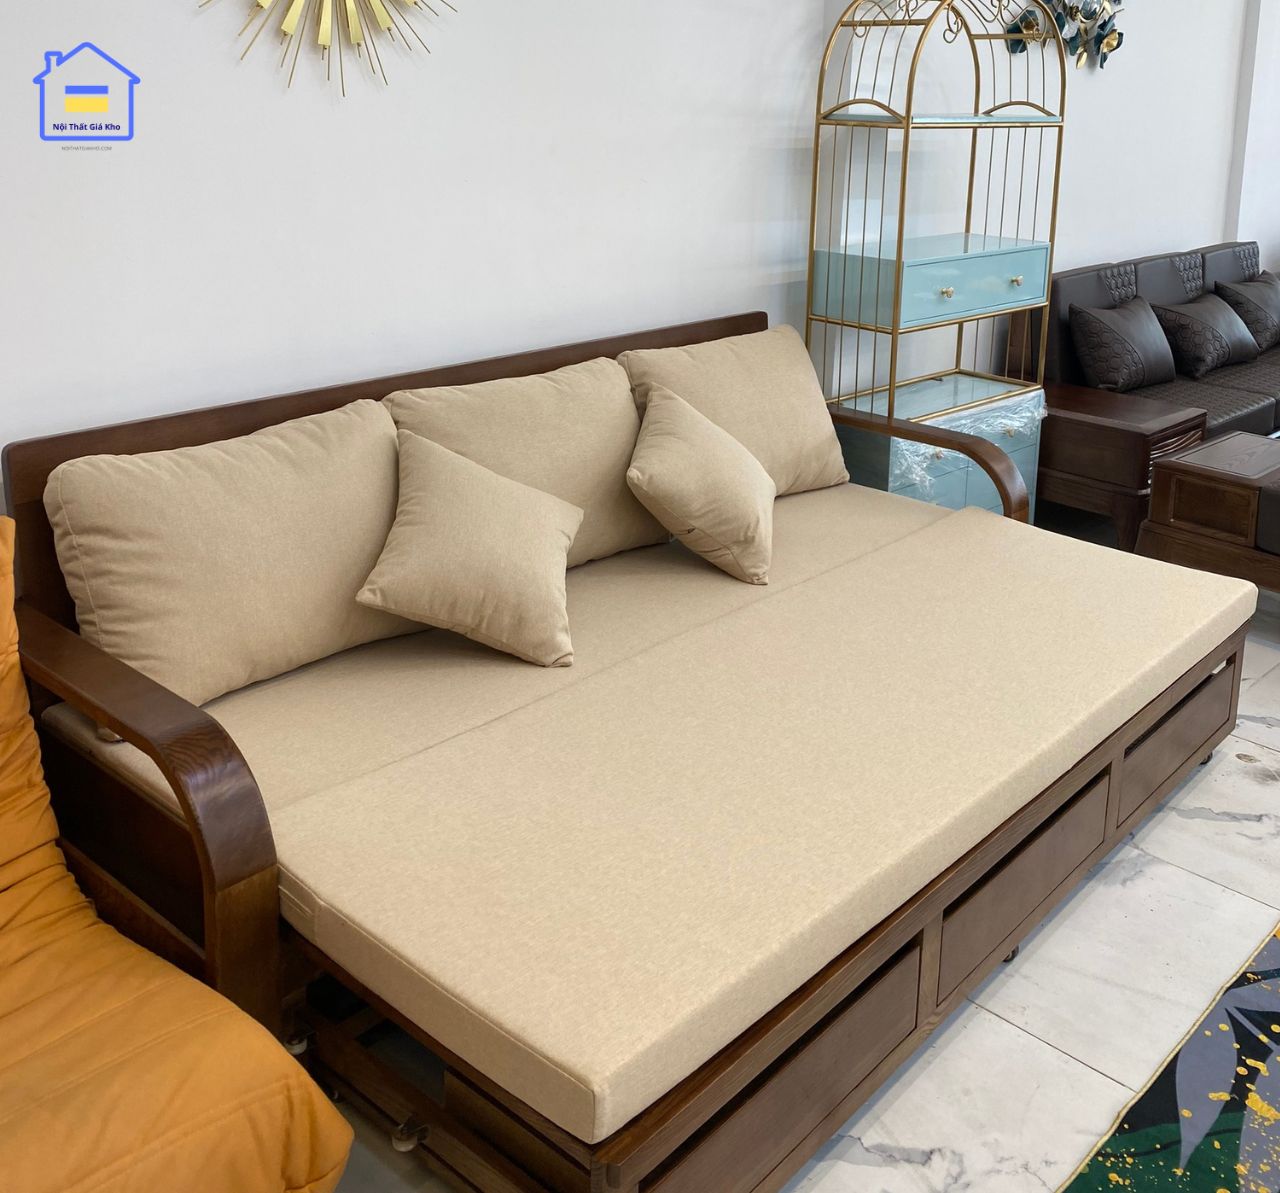 Sofa giường gỗ sồi cao cấp với chất liệu và kiểu dáng đẹp mắt, sẽ là sự lựa chọn hàng đầu cho những ai ưa thích sự tinh tế và sang trọng cho không gian phòng ngủ của mình. Sản phẩm này được thiết kế hàng đầu với những tính năng tiện ích và độ bền cao, đảm bảo sẽ là một sản phẩm đáng đầu tư cho gia đình bạn.